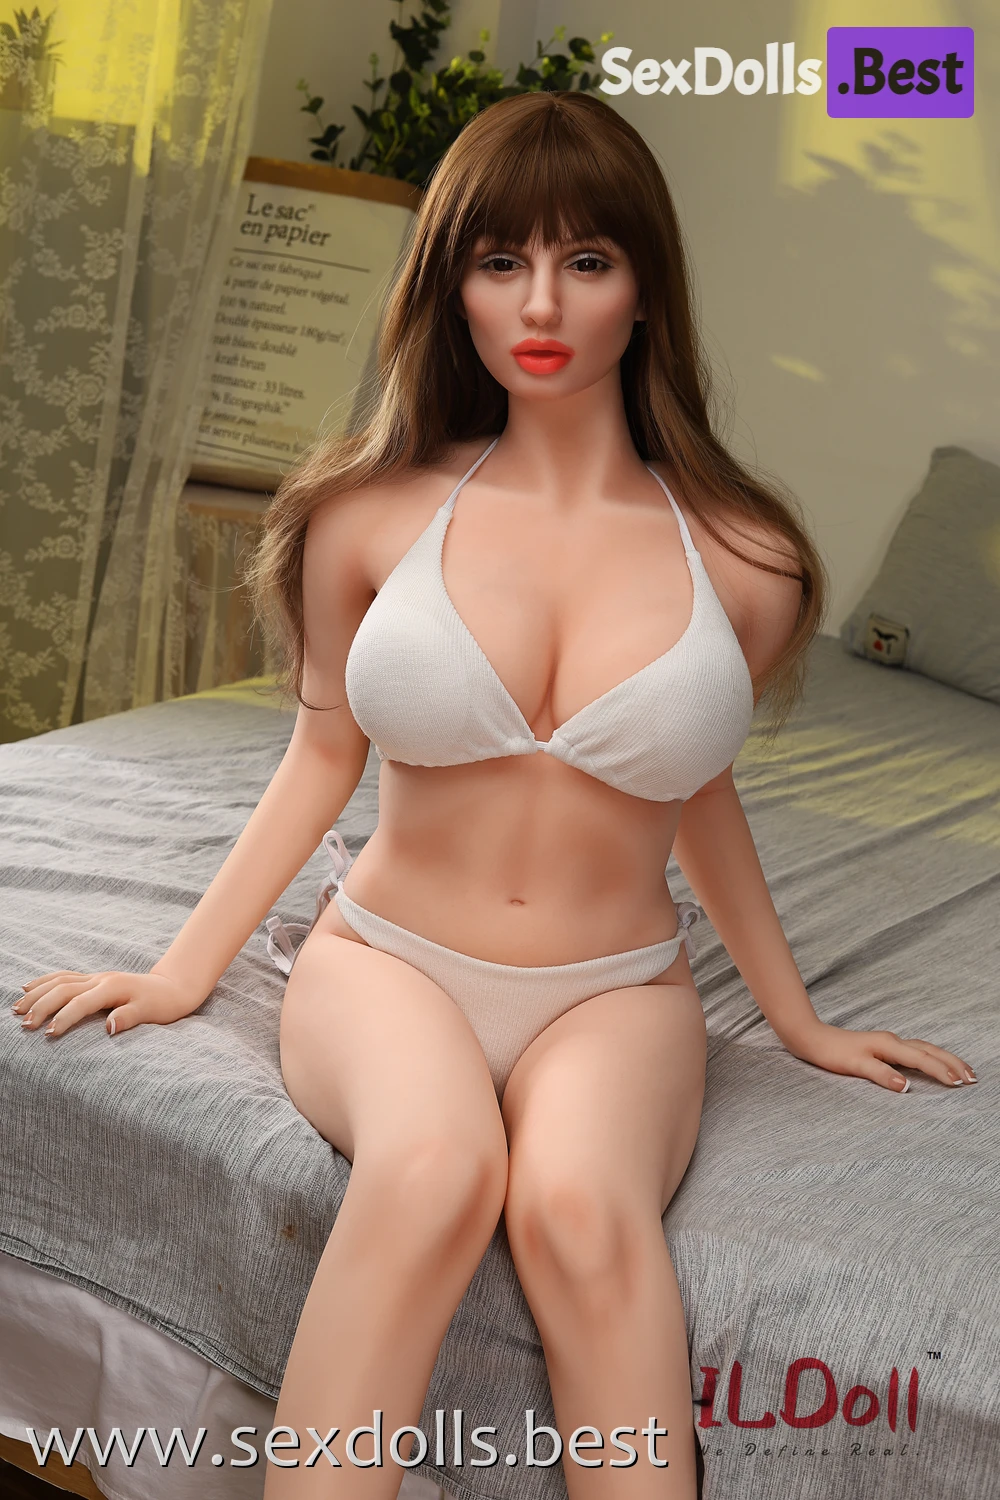 Curvy Sex Doll